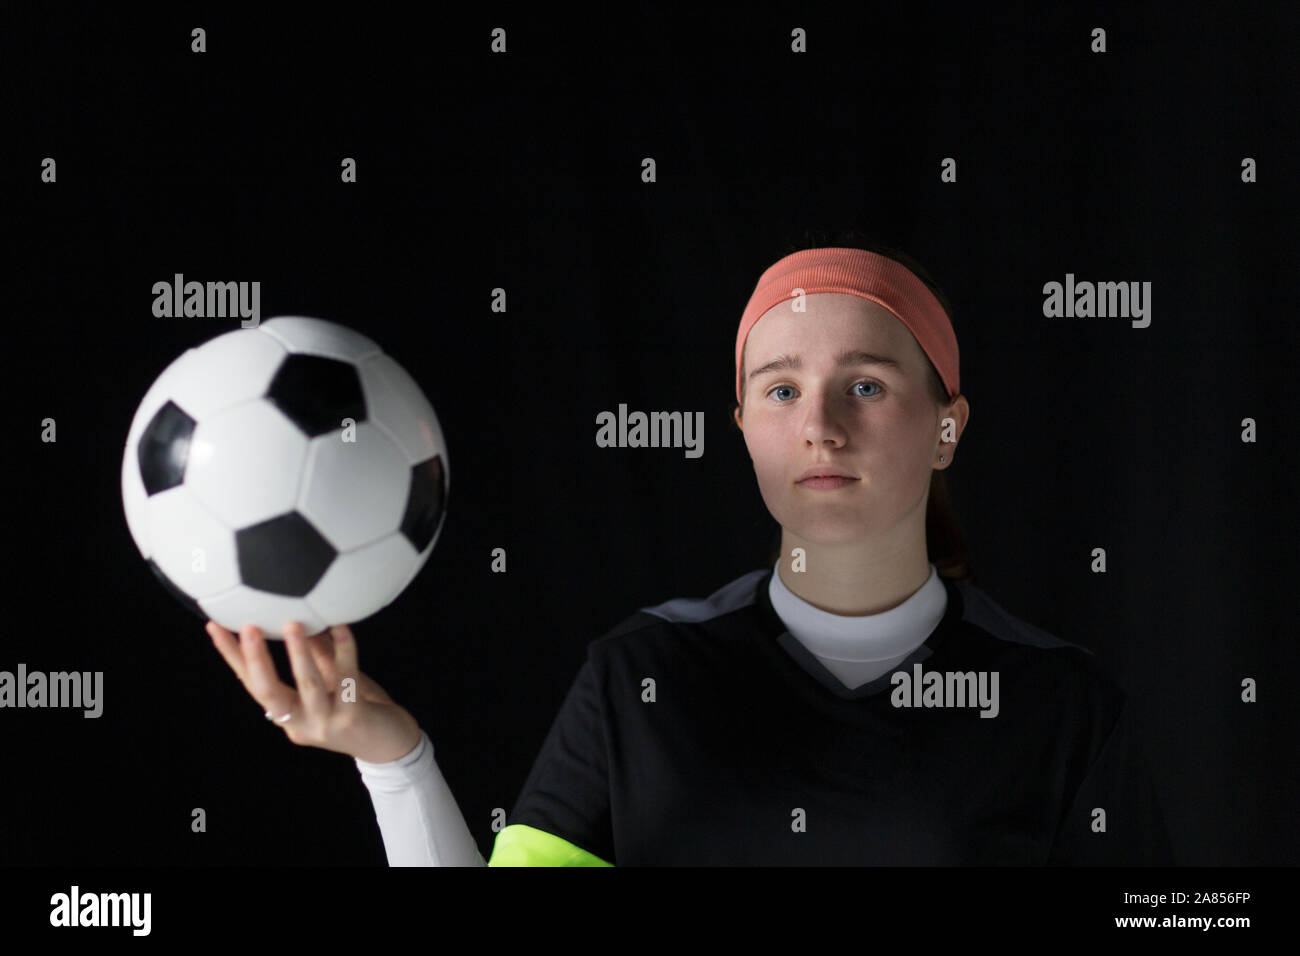 Retrato seguro, determinado adolescente futbolista sosteniendo un balón de fútbol Foto de stock